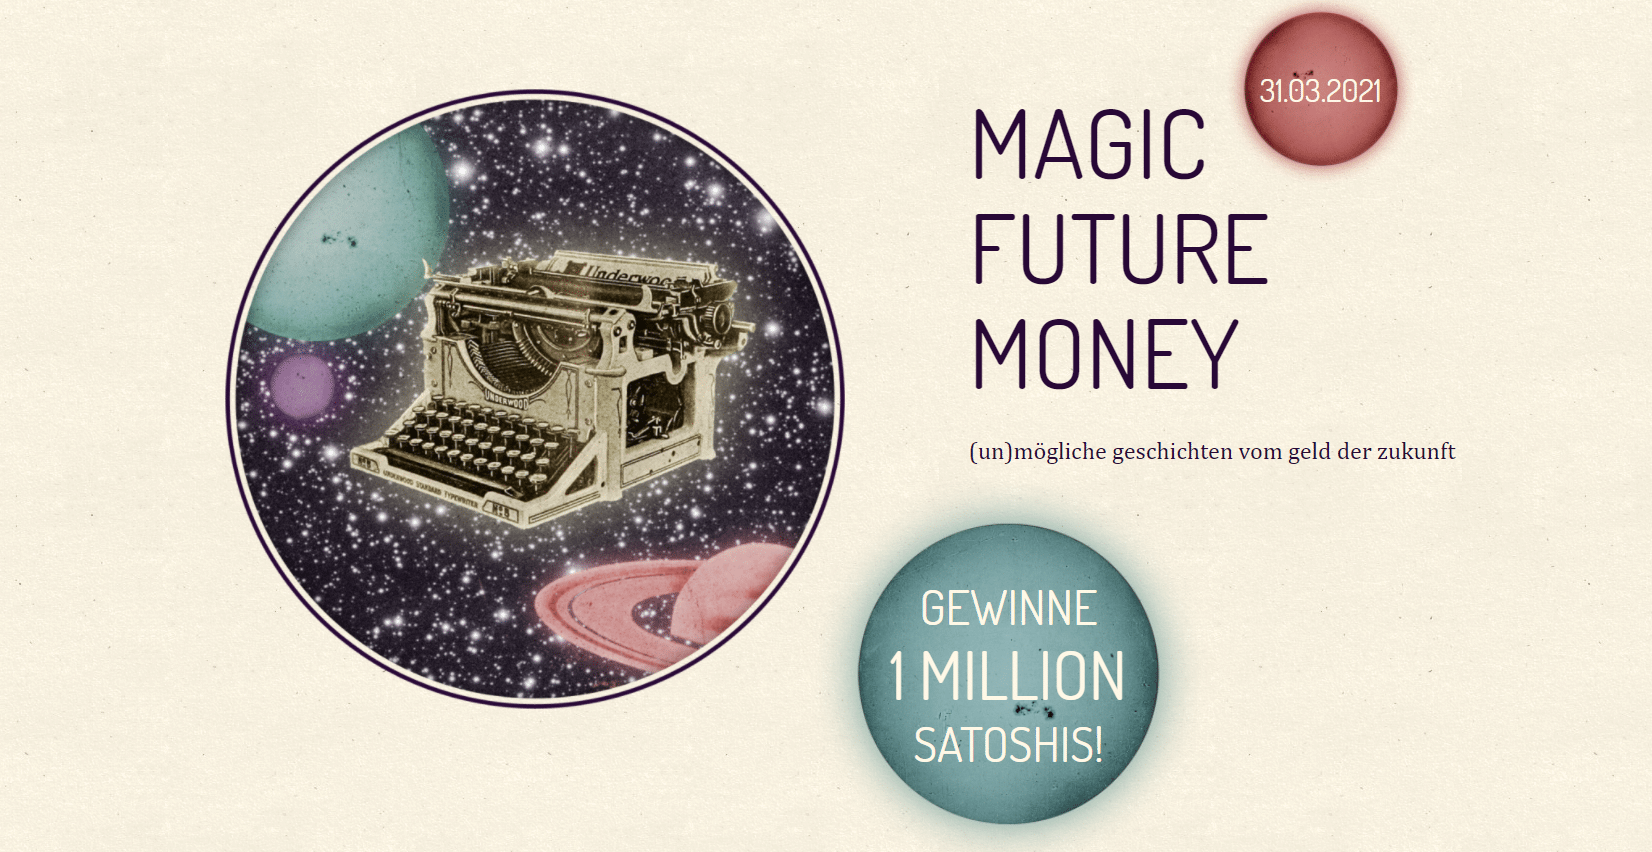 “Magic Future Money” - Warum wir endlich über Geld reden müssen